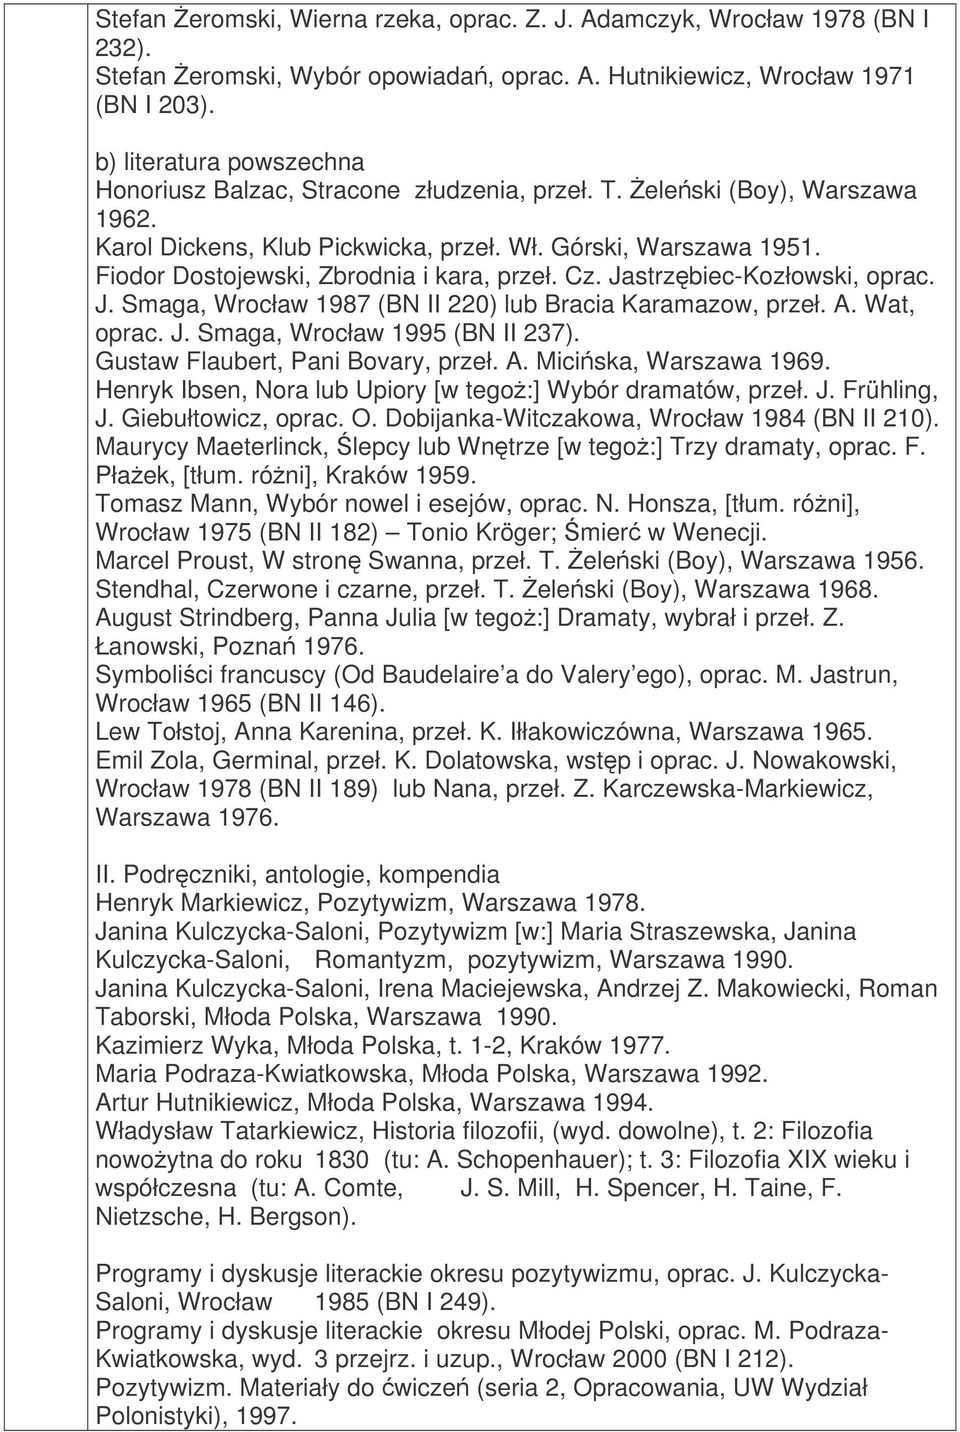 Fiodor Dostojewski, Zbrodnia i kara, przeł. Cz. Jastrzbiec-Kozłowski, oprac. J. Smaga, Wrocław 1987 (BN II 220) lub Bracia Karamazow, przeł. A. Wat, oprac. J. Smaga, Wrocław 1995 (BN II 237).